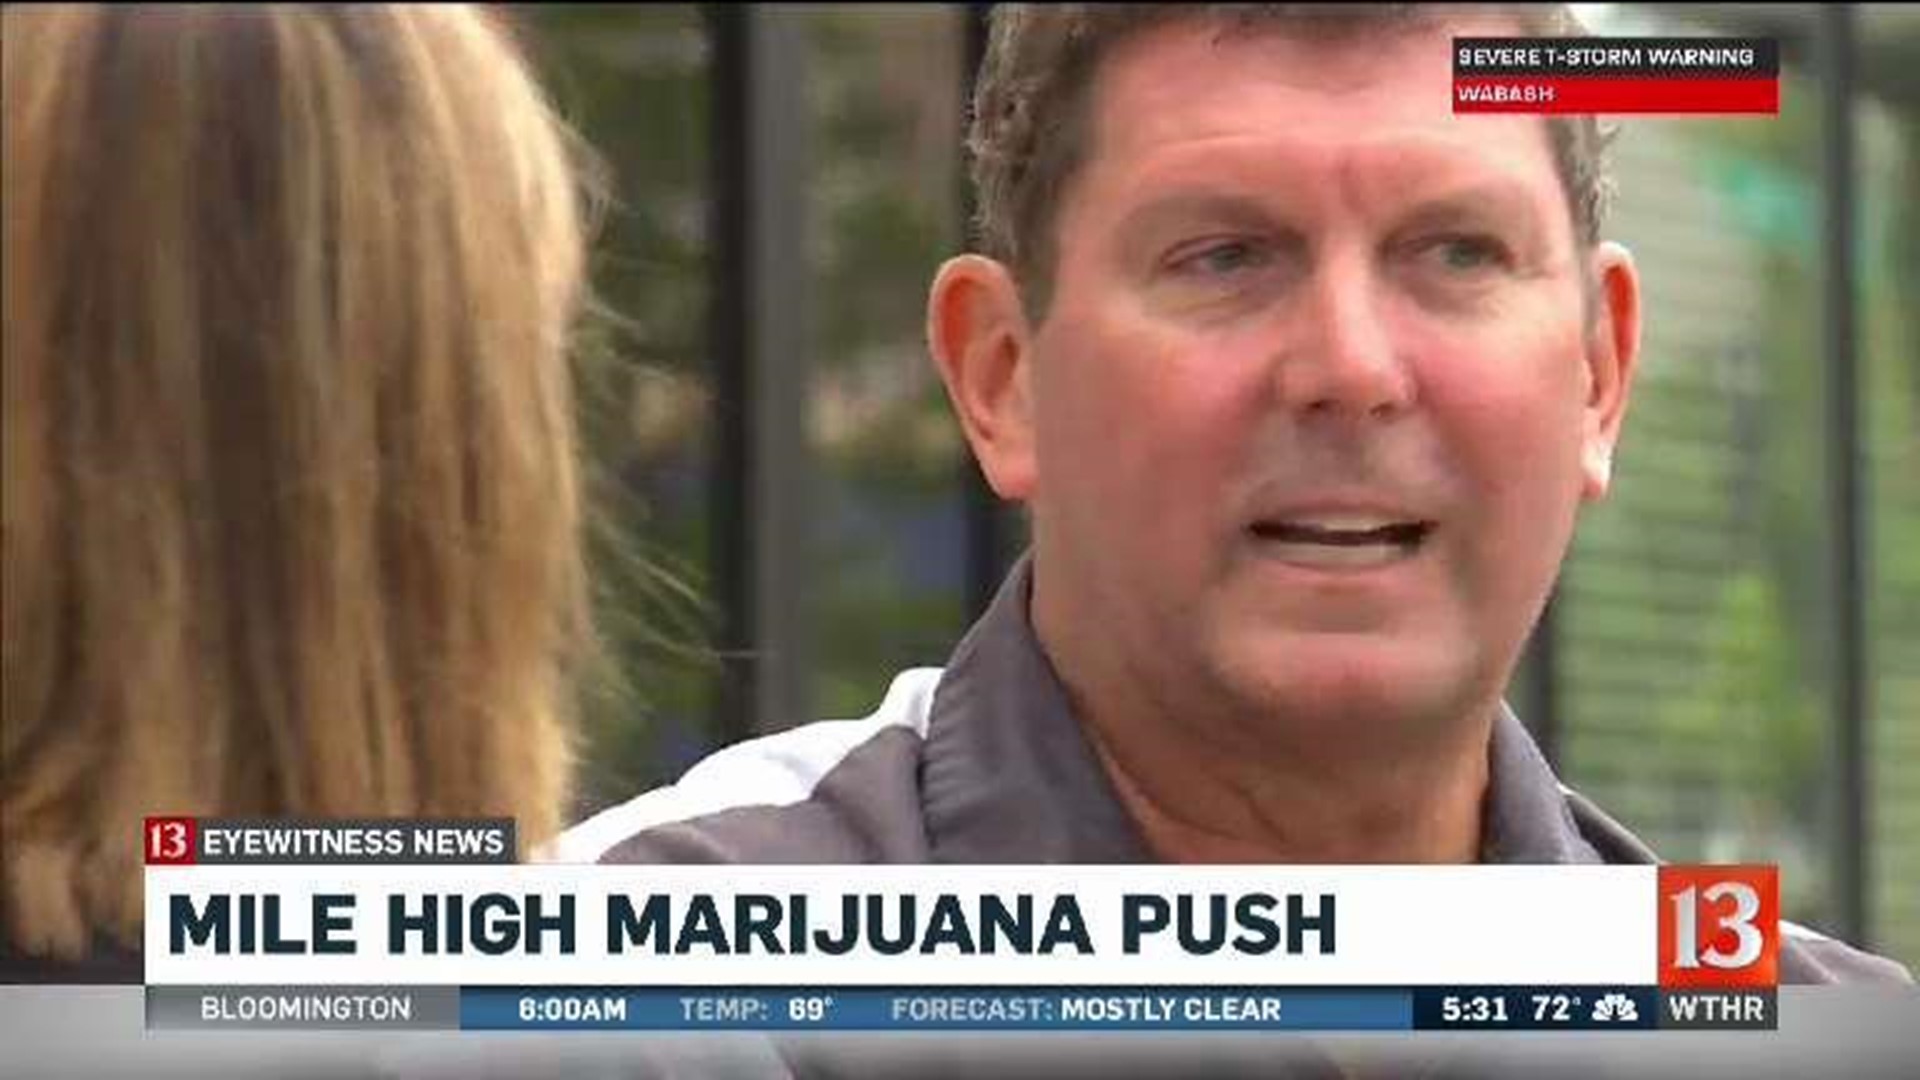 Mile-high marijuana push